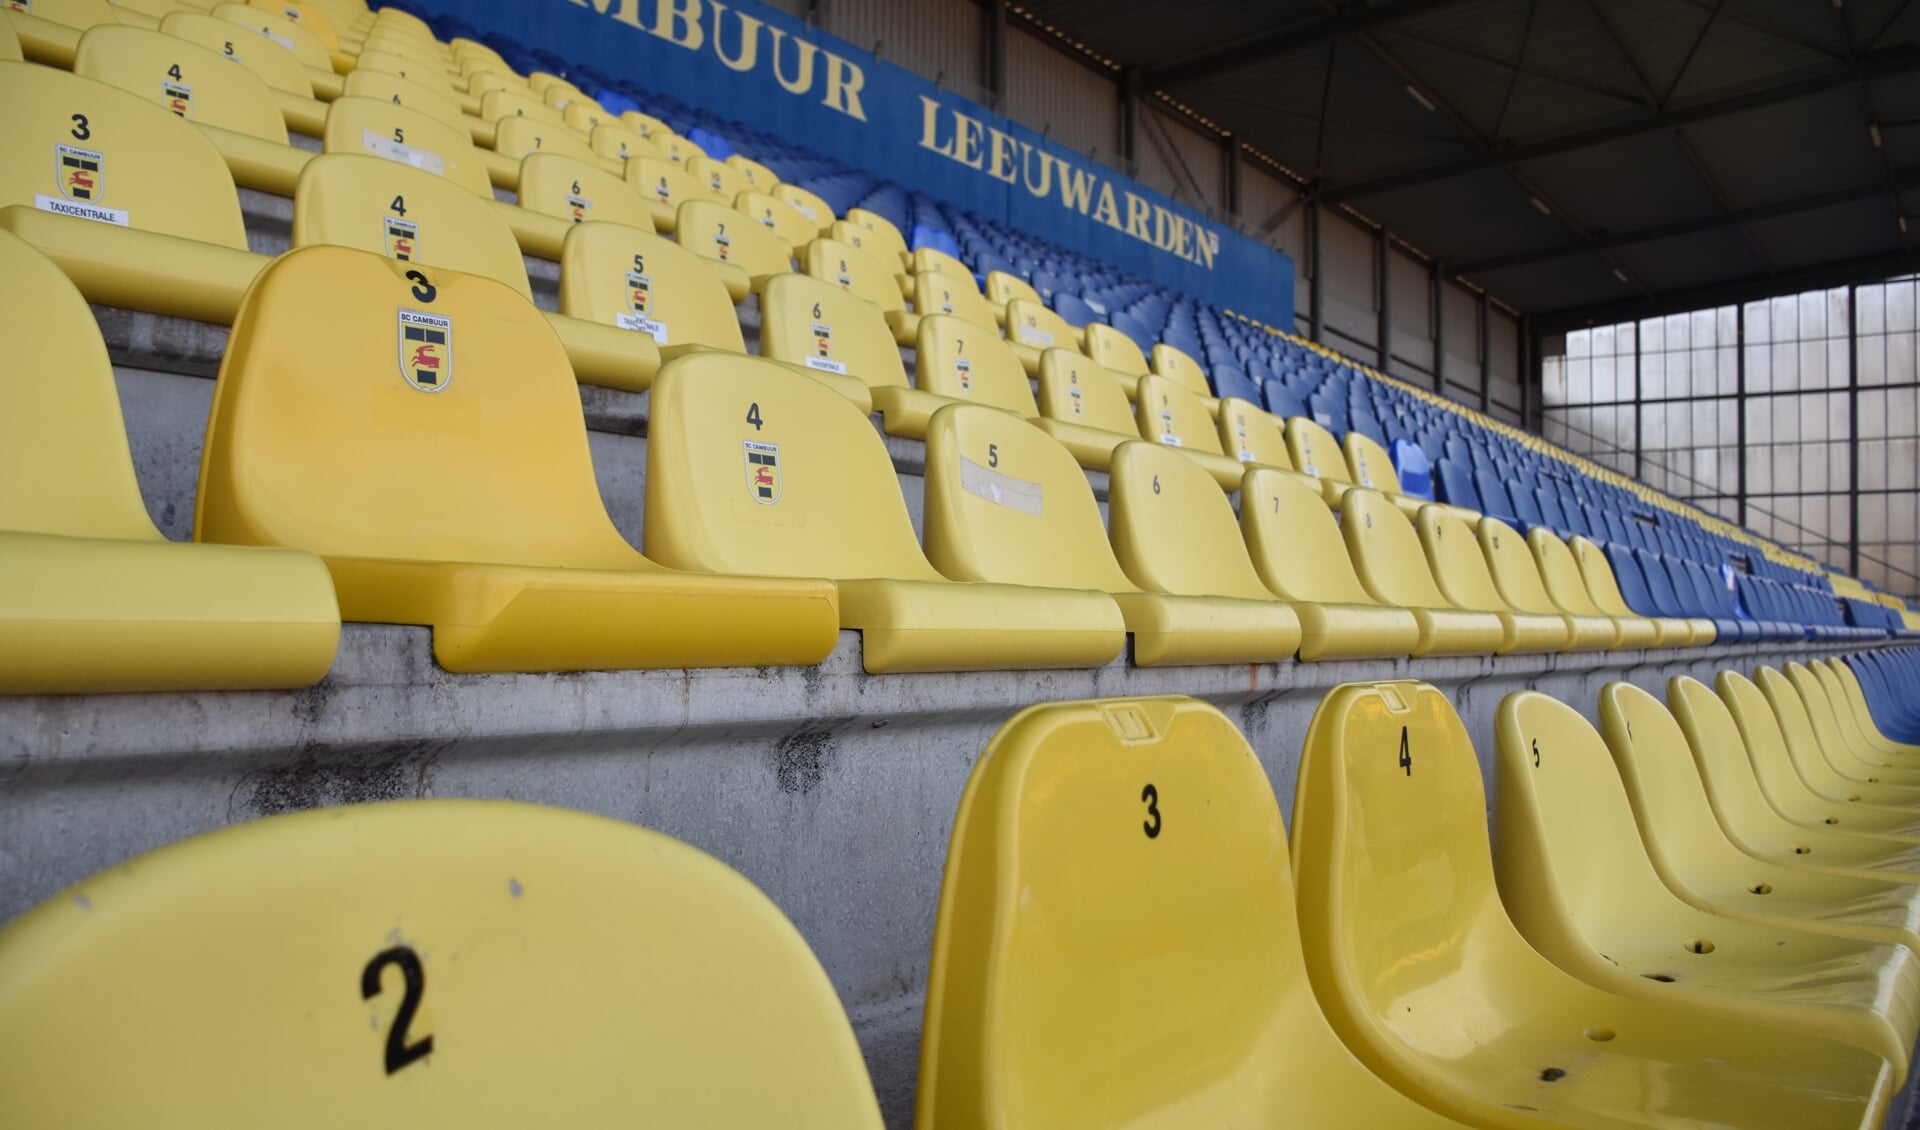 De lege stoeltjes in het Cambuur Stadion zijn binnenkort eindelijk weer eens gevuld.